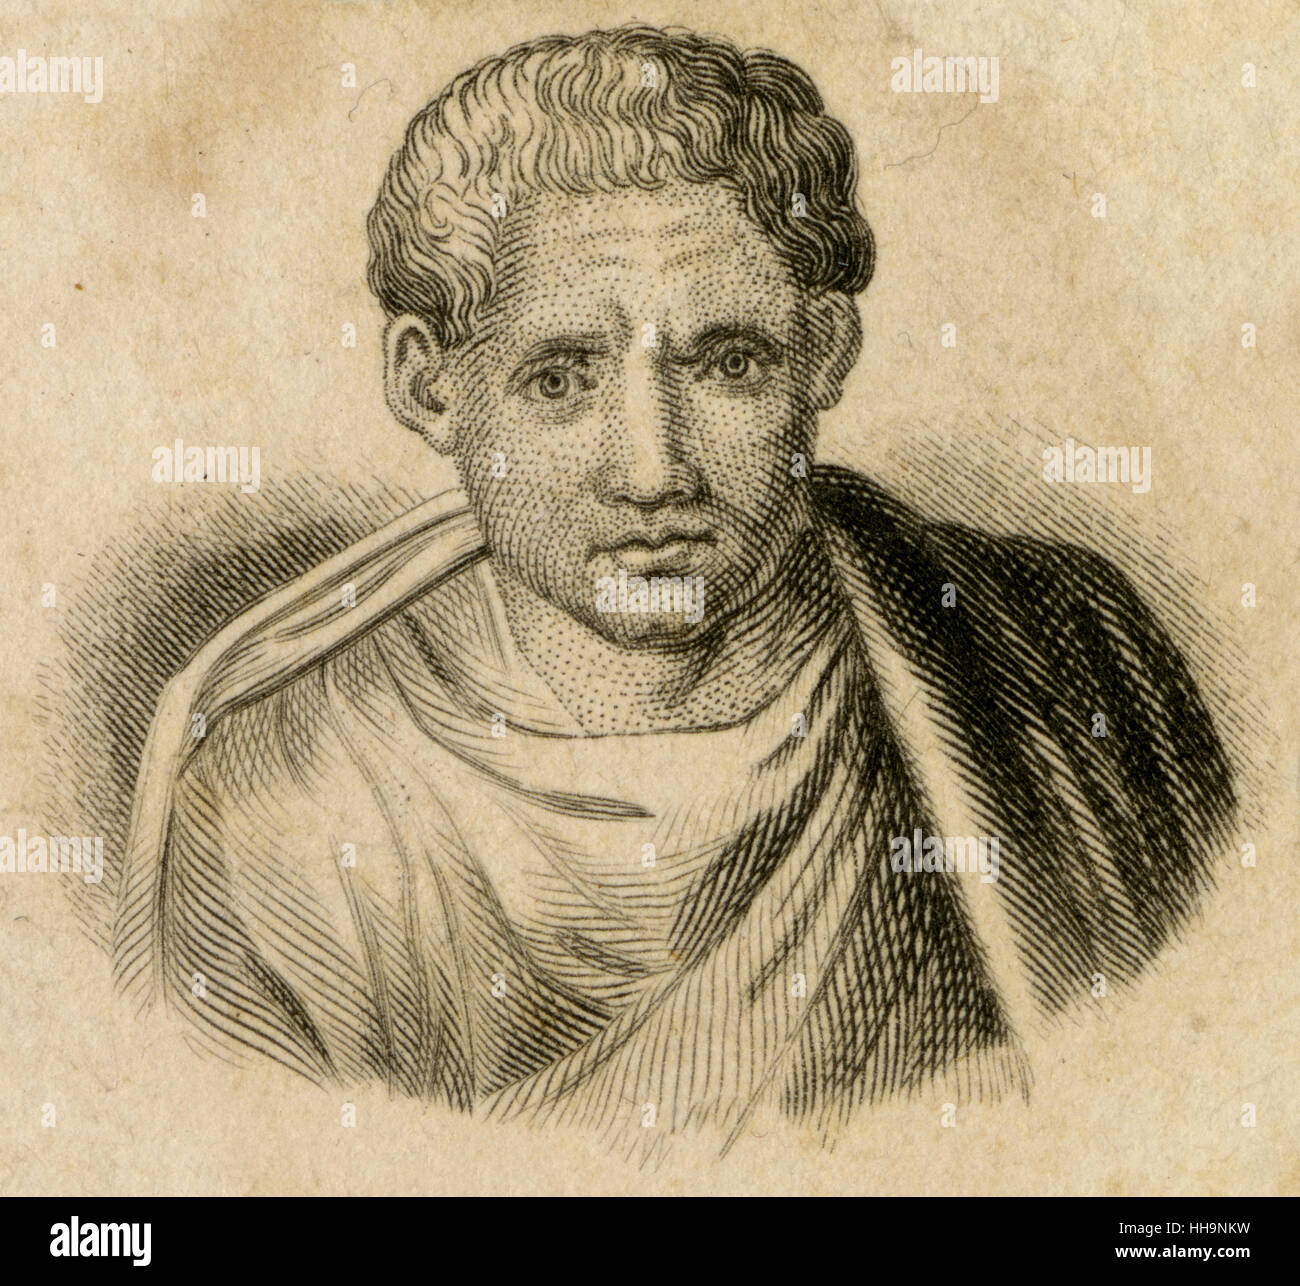 Antike c1820 Gravur, Posidippus von Pella (ca. 310-c. 240 v. Chr.) war eine antike griechische Epigramme Dichter. QUELLE: ORIGINAL GRAVUR. Stockfoto